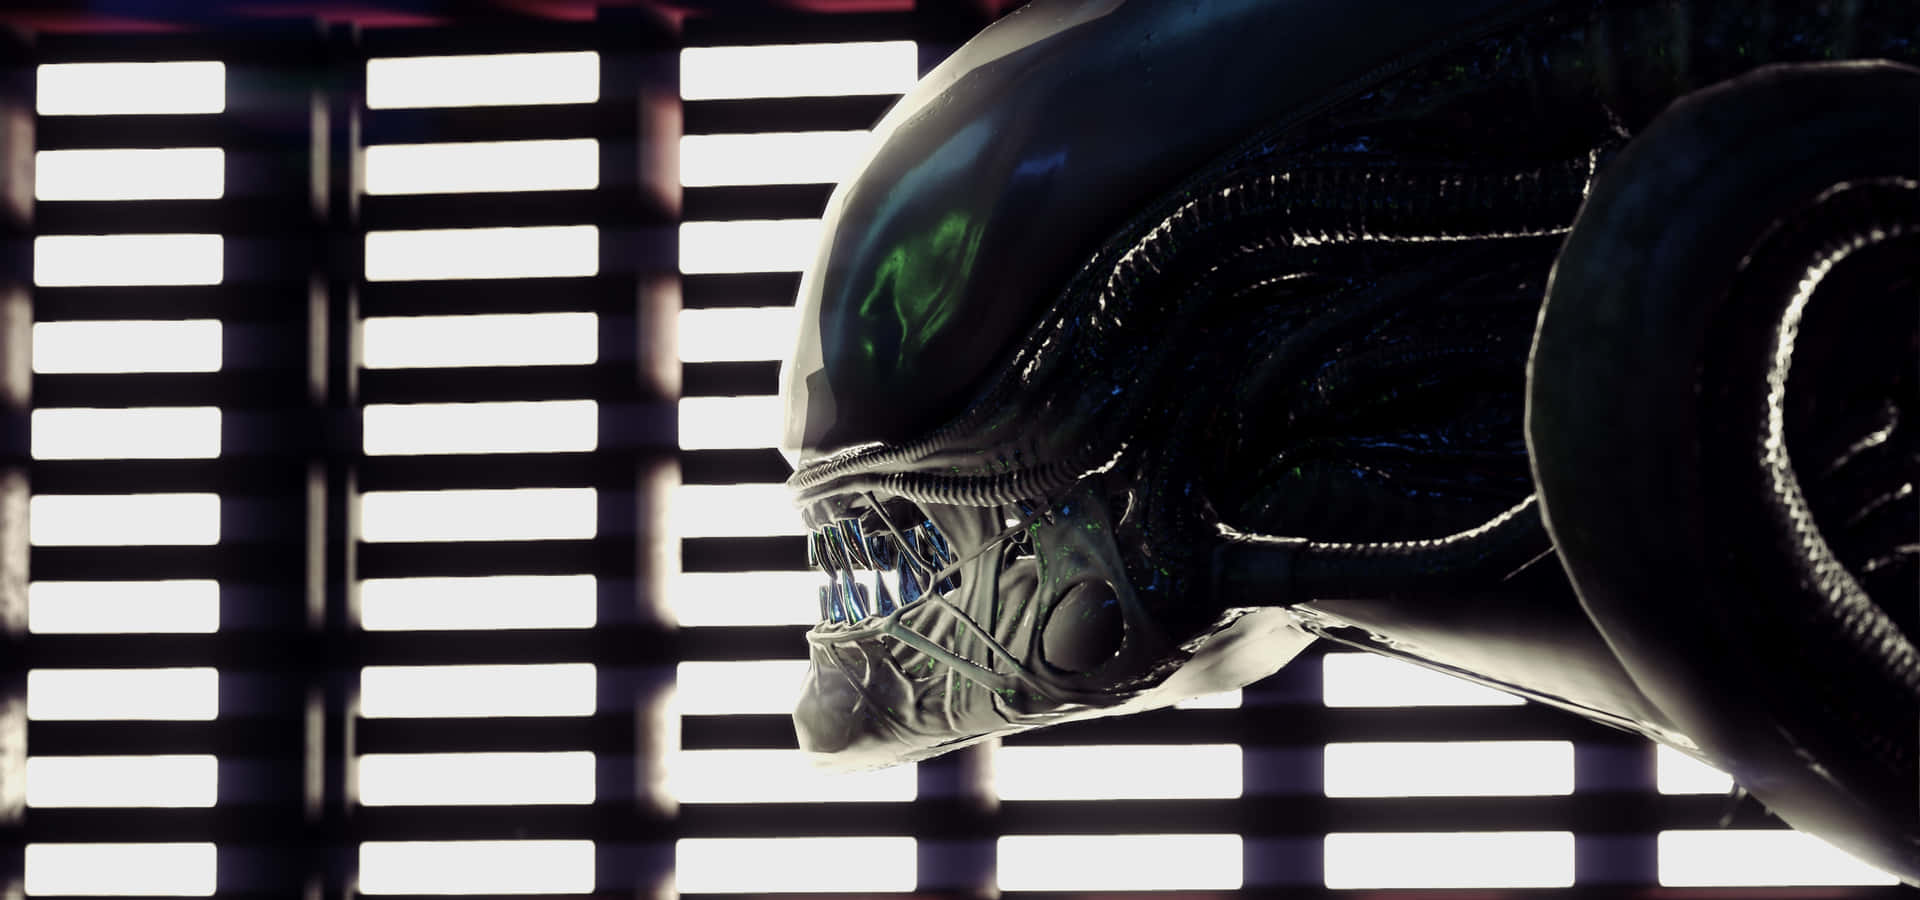 alien movie wallpaper hd